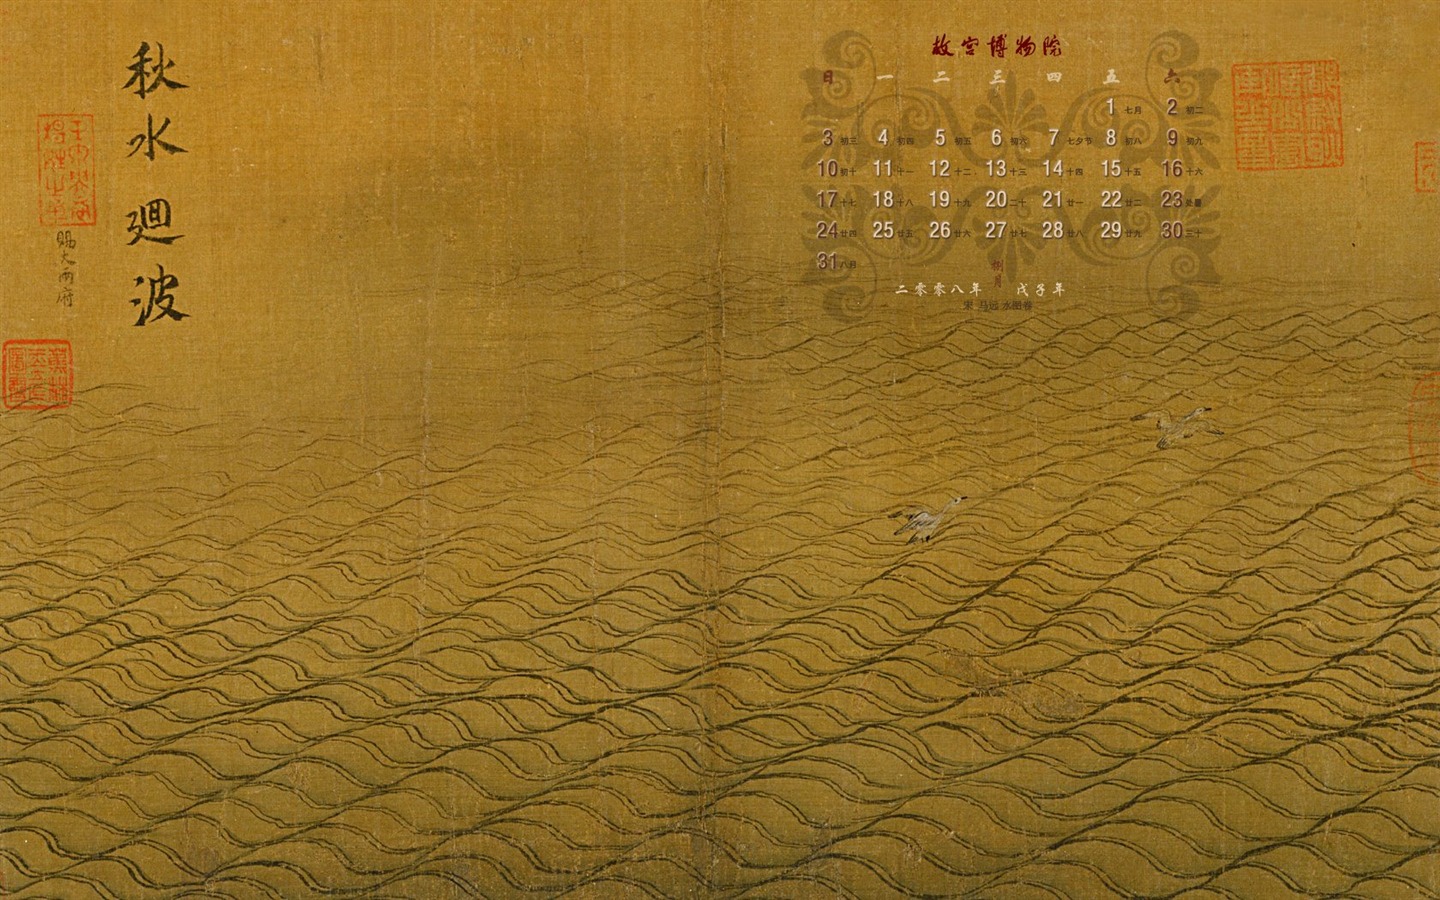 北京故宫博物院 文物展壁纸(二)11 - 1440x900